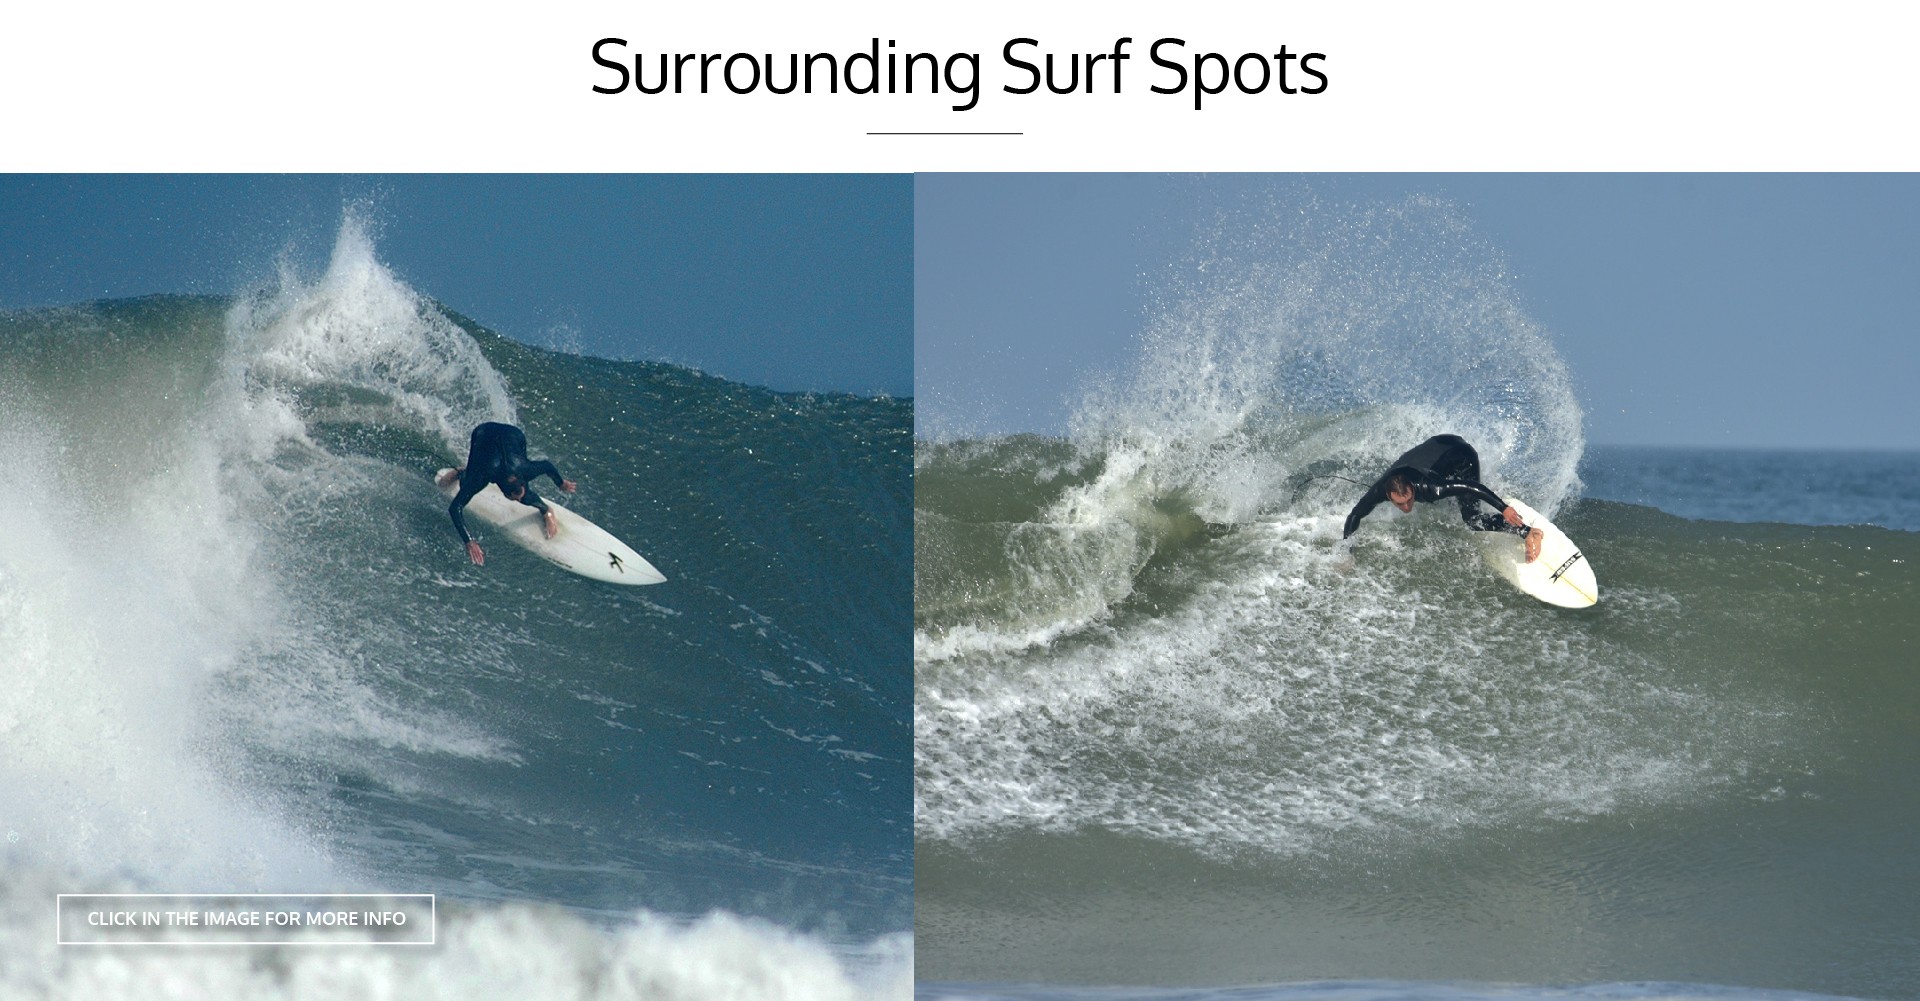 SURROUNDING SURF SPOTS